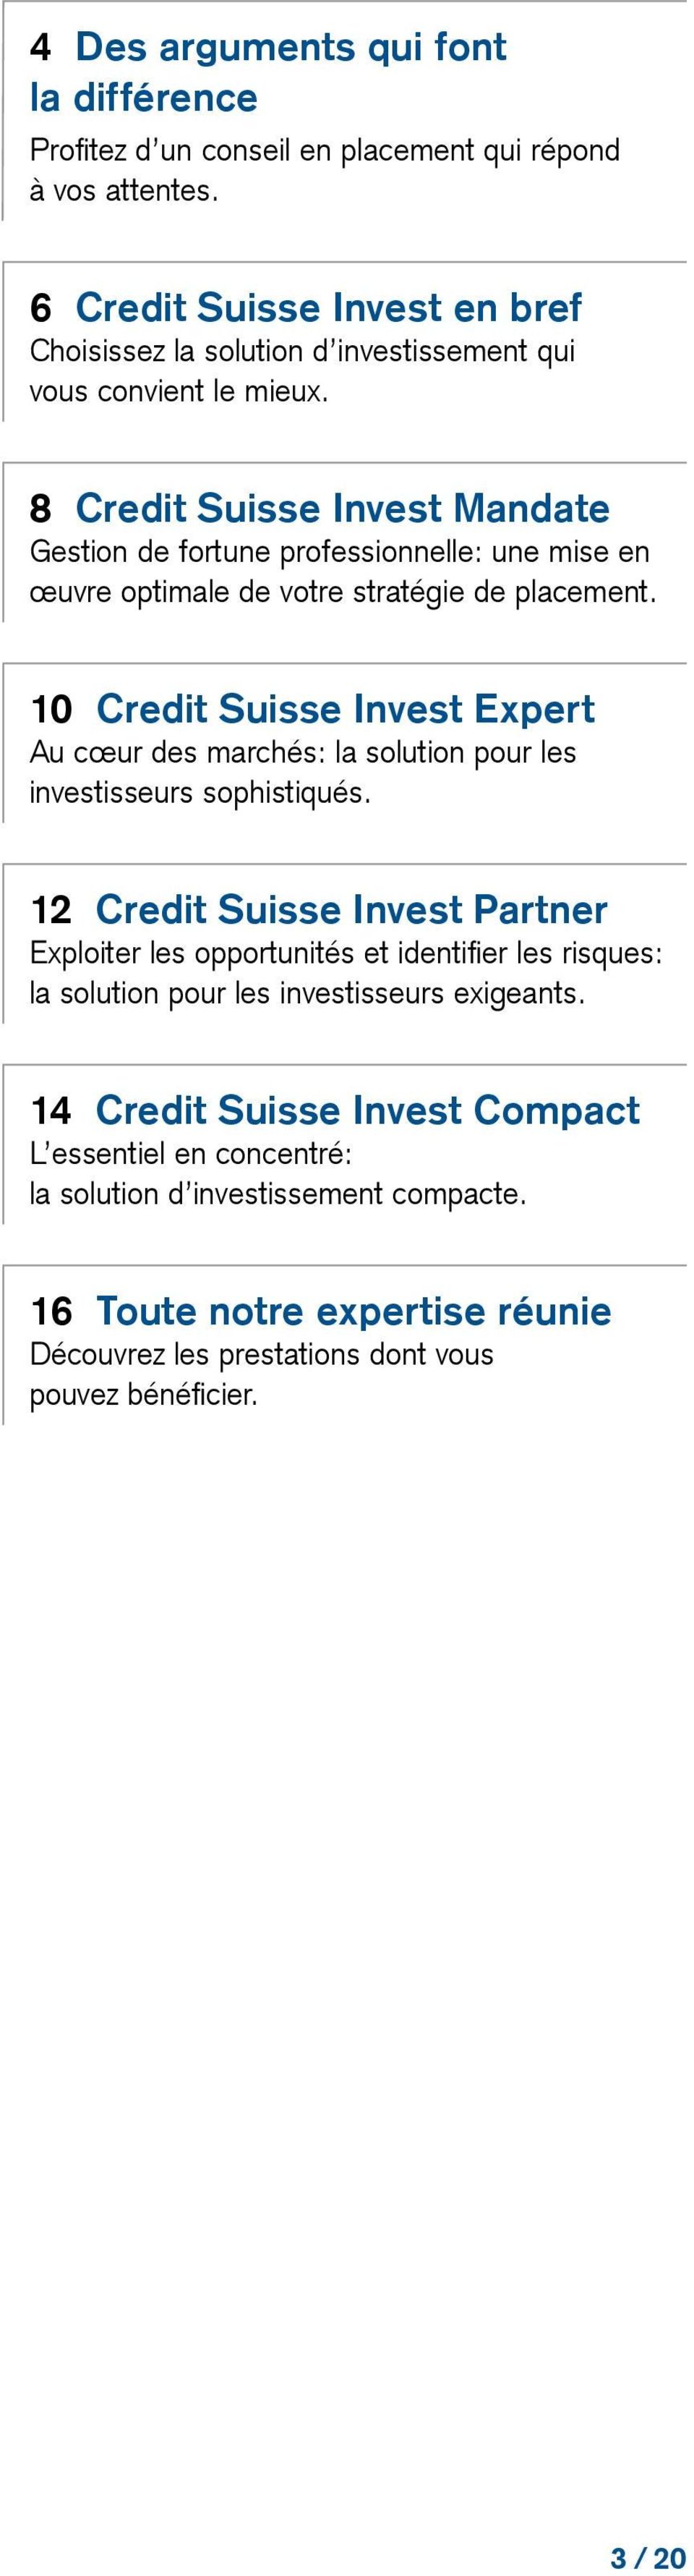 8 Credit Suisse Invest Mandate Gestion de fortune professionnelle: une mise en œuvre optimale de votre stratégie de placement.